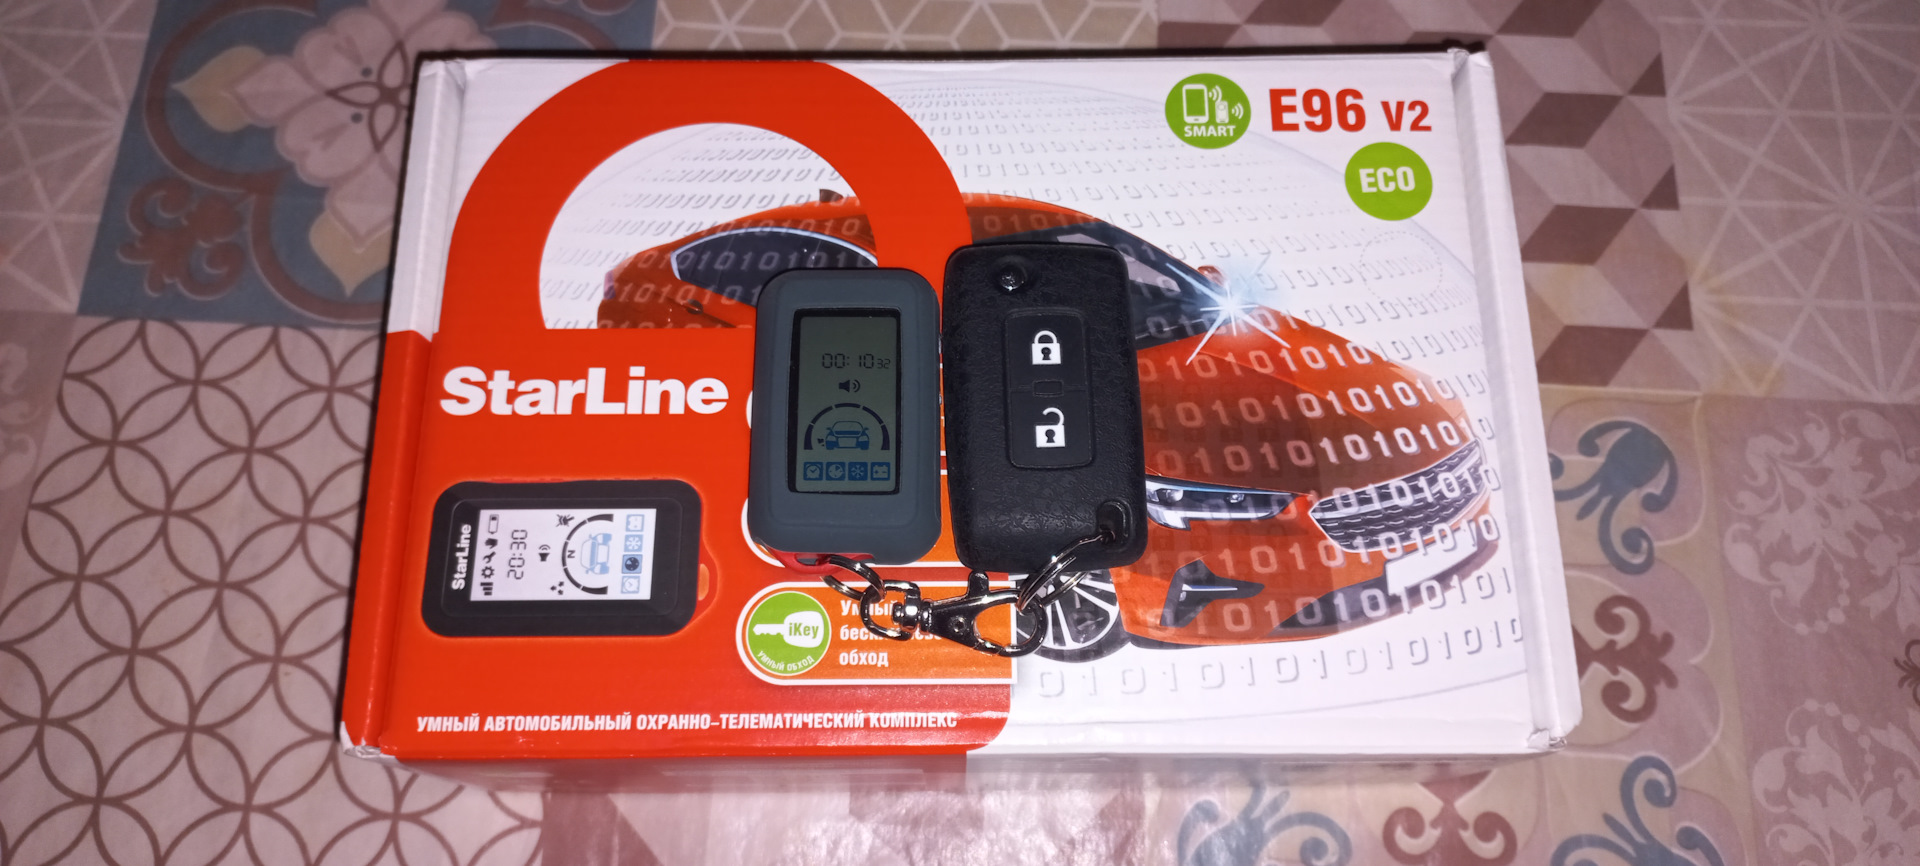 Старлайн техподдержка телефон. STARLINE e96 Eco. STARLINE a96 Eco. Старлайн s96 Eco где антенна.